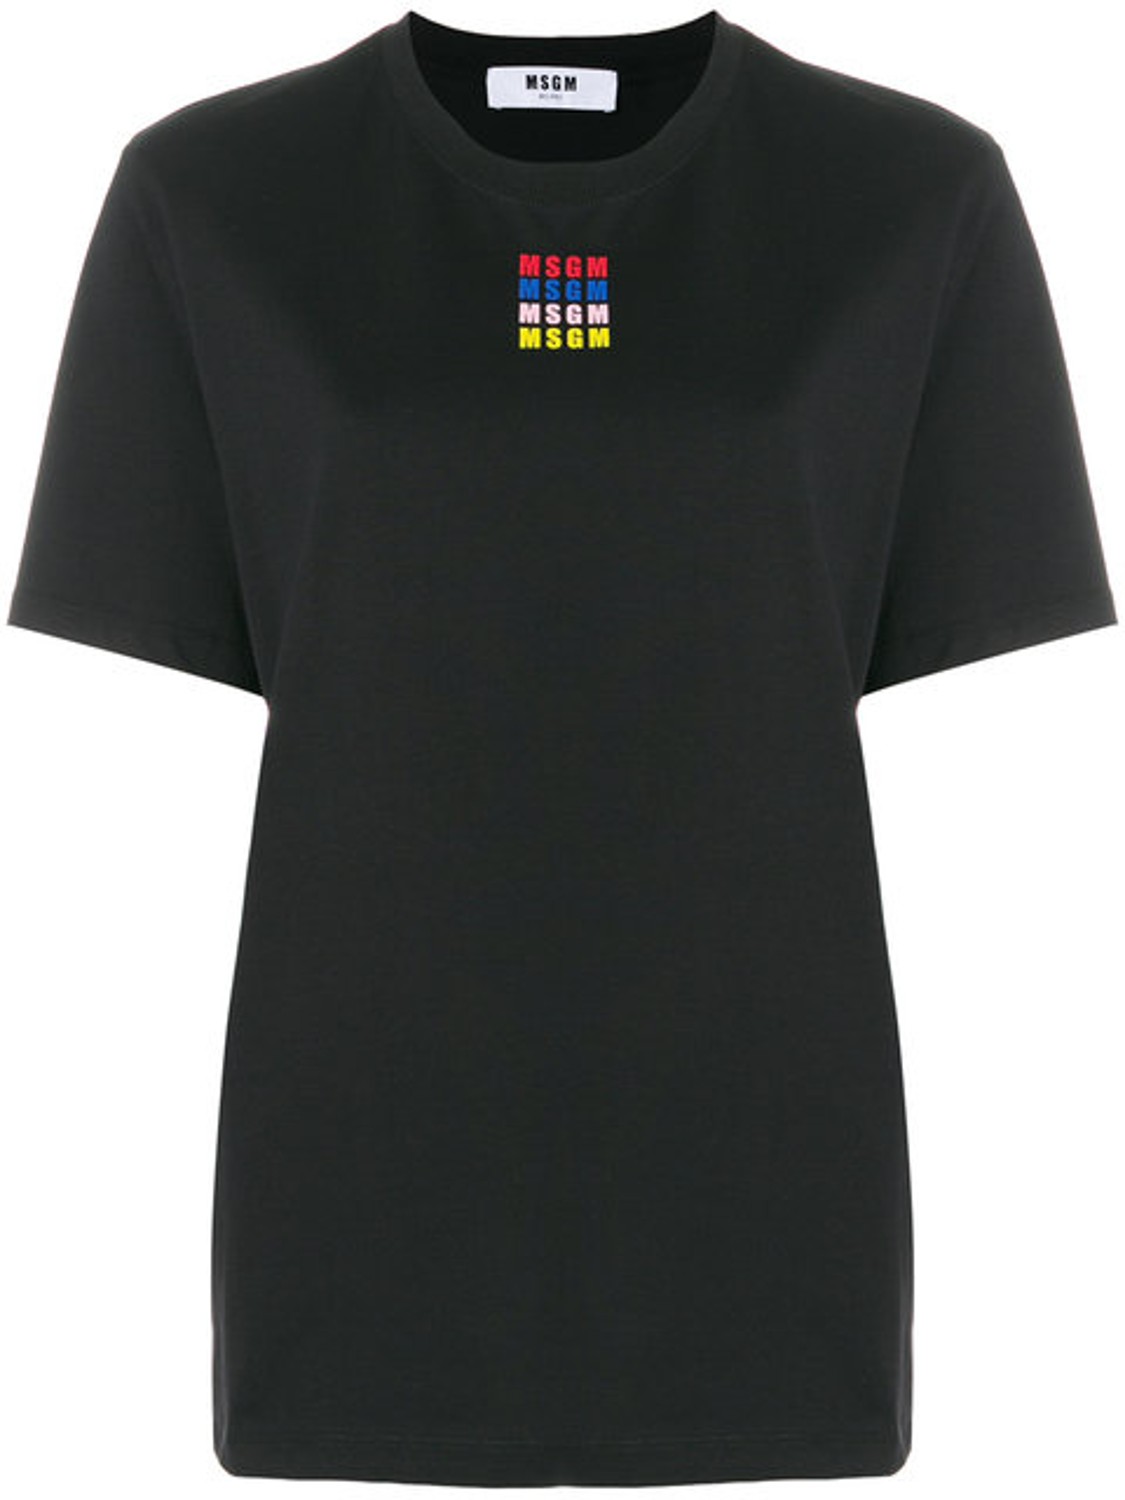 shop MSGM Sales T-shirts: T-shirt MSGM, nera, girocollo, logo in tre colori diversi sul davanti.

Composizione: 100% cotone. number 1265